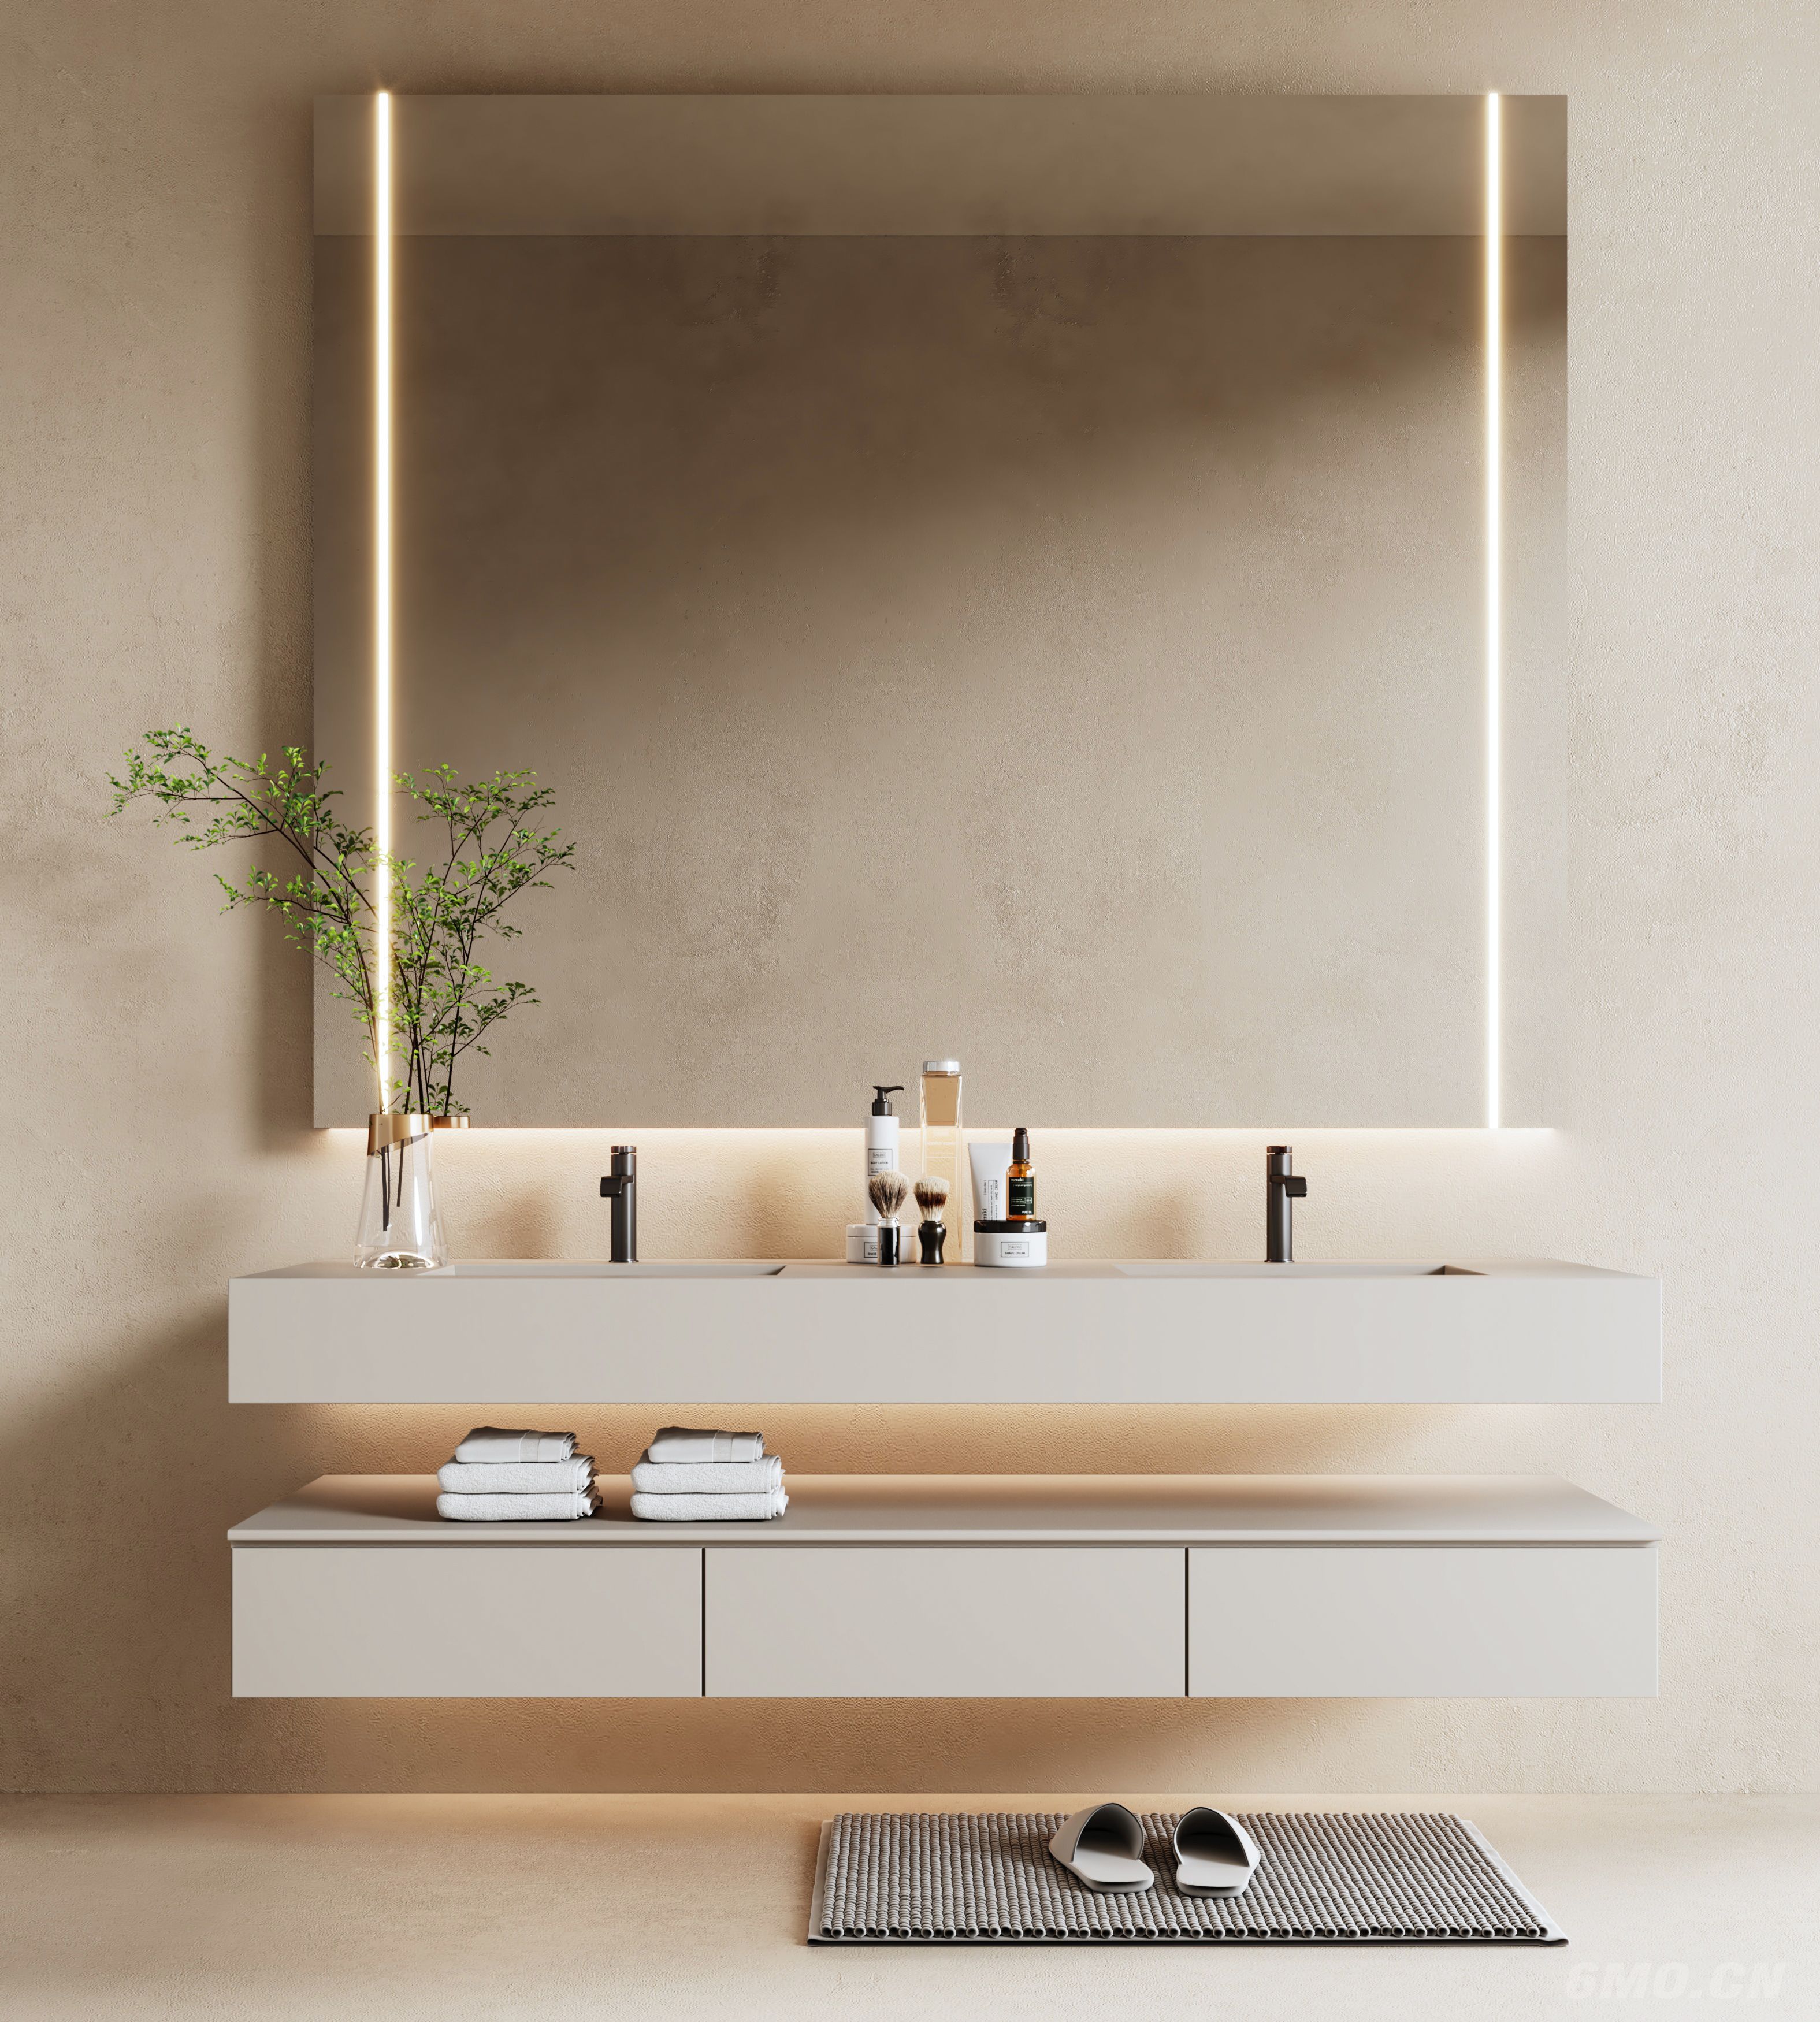 现代浴室柜  浴室镜  洗手台